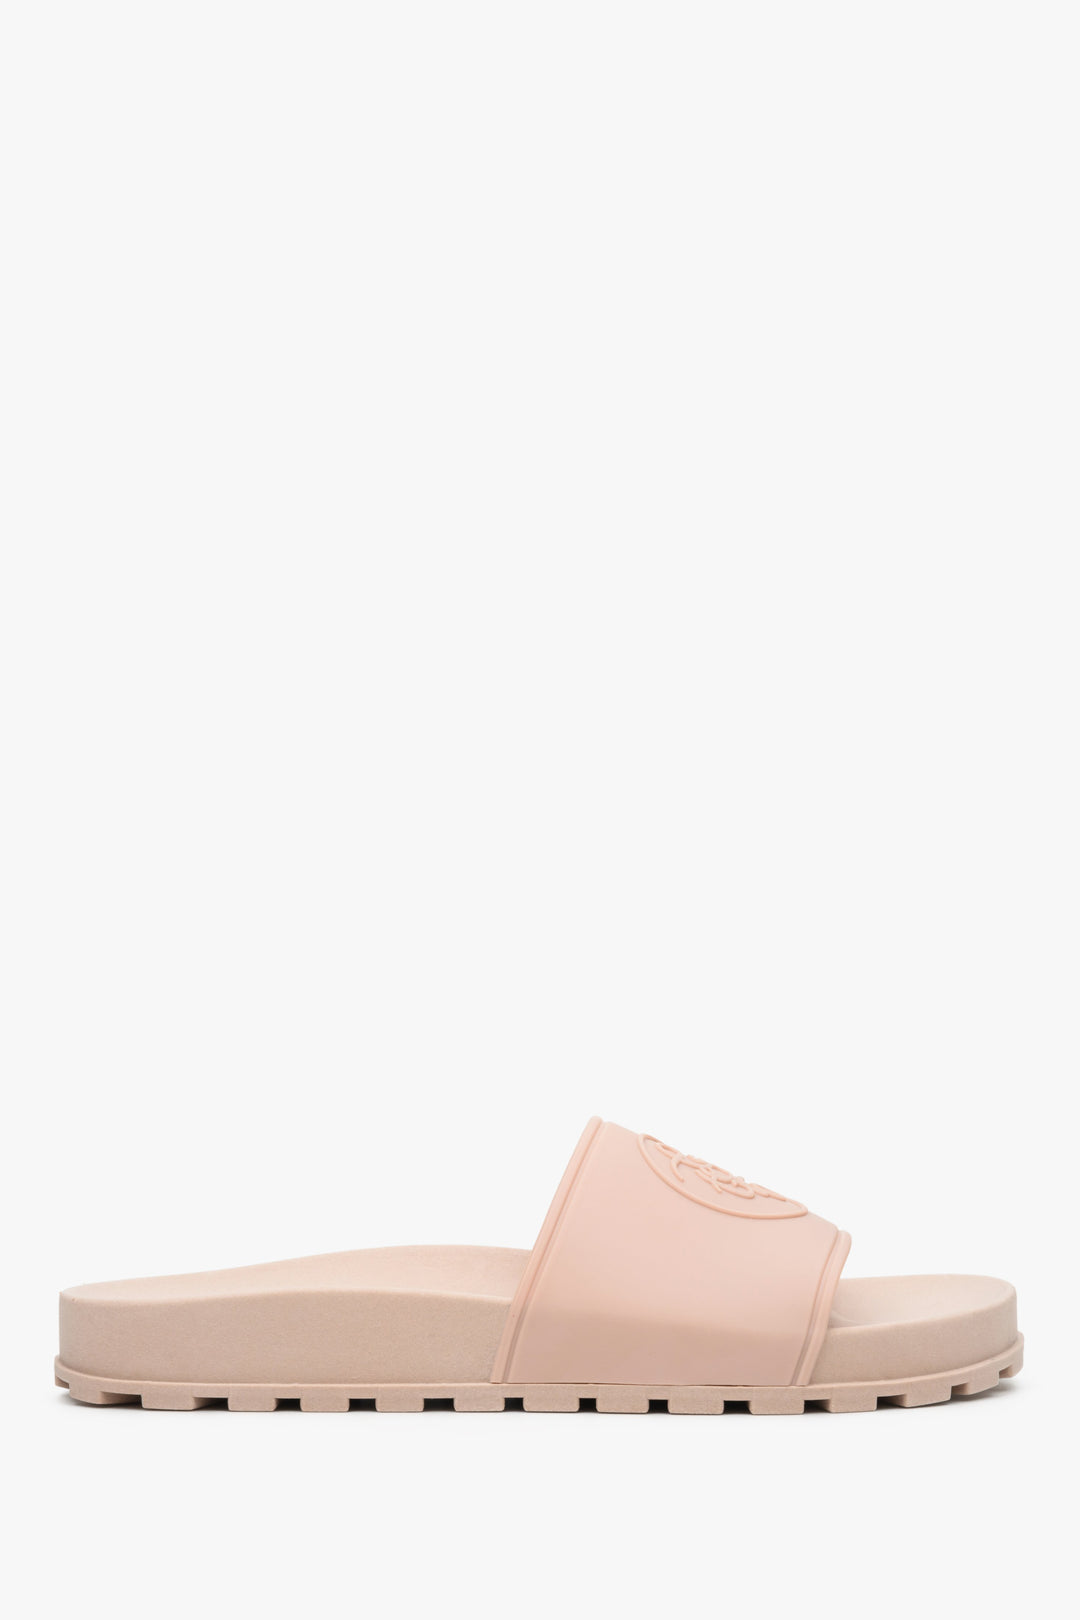 Gumowe klapki damskie Estro w kolorze jasnoróżowym - profil buta.